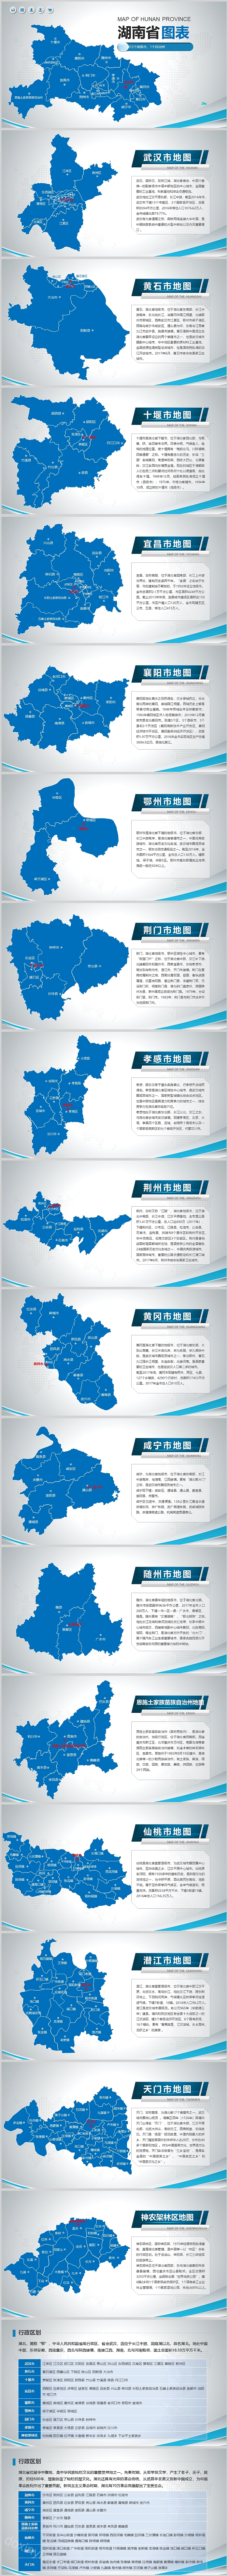 创意中国地图湖南省地图ppt